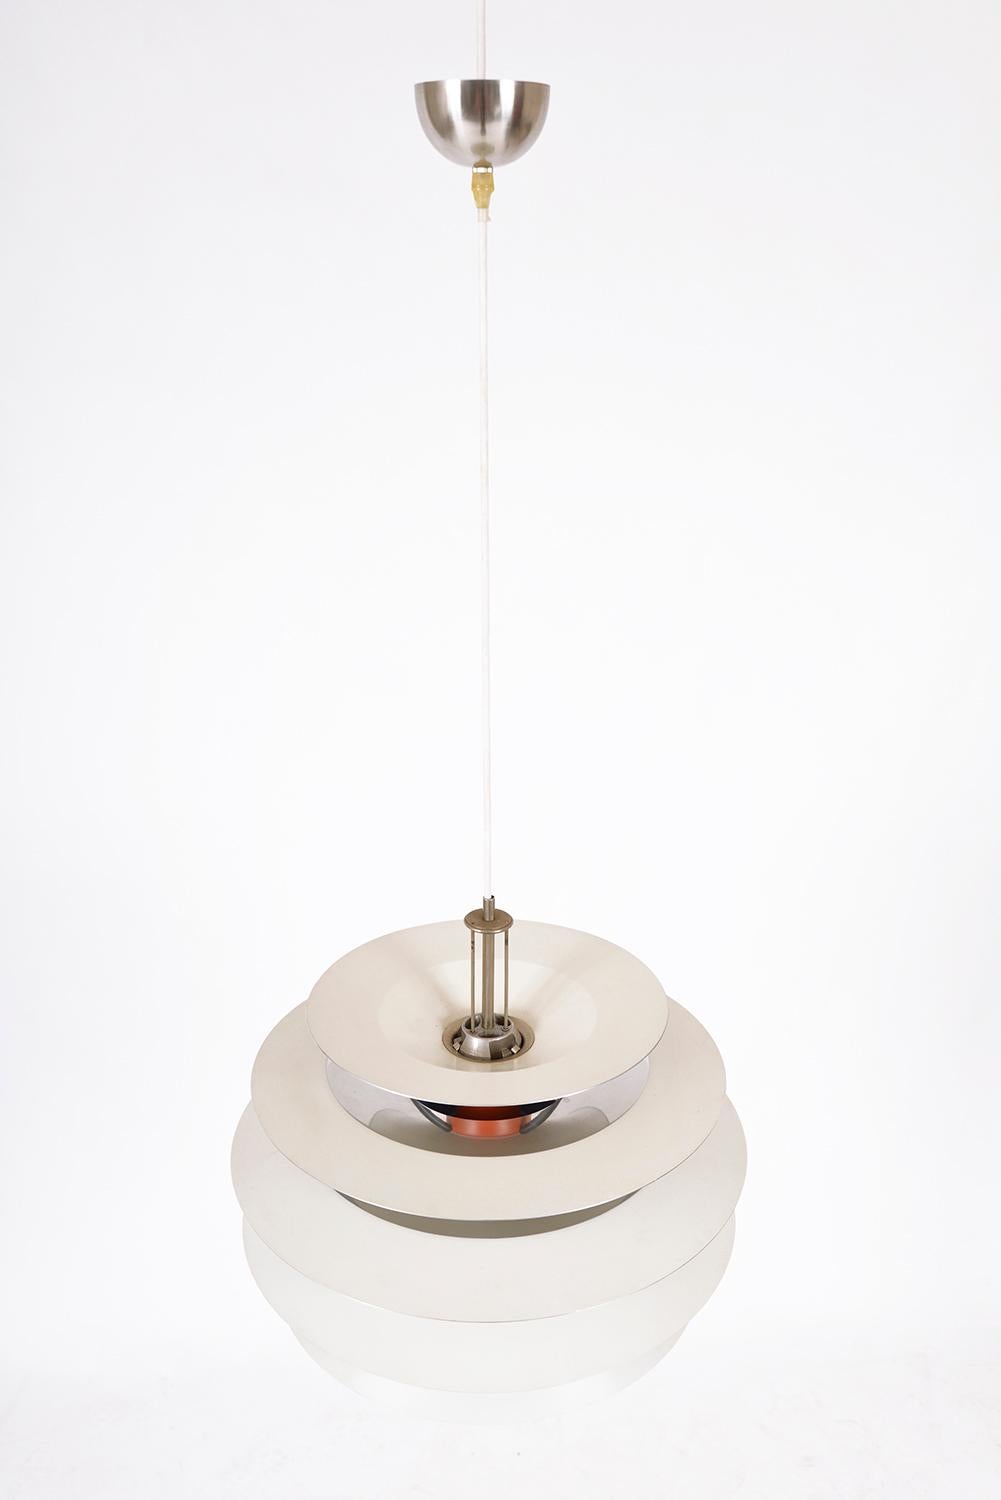 1960s Louis Poulsen PH Kontrast Pendant Lamp by Poul Henningsen Denmark For Sale 3